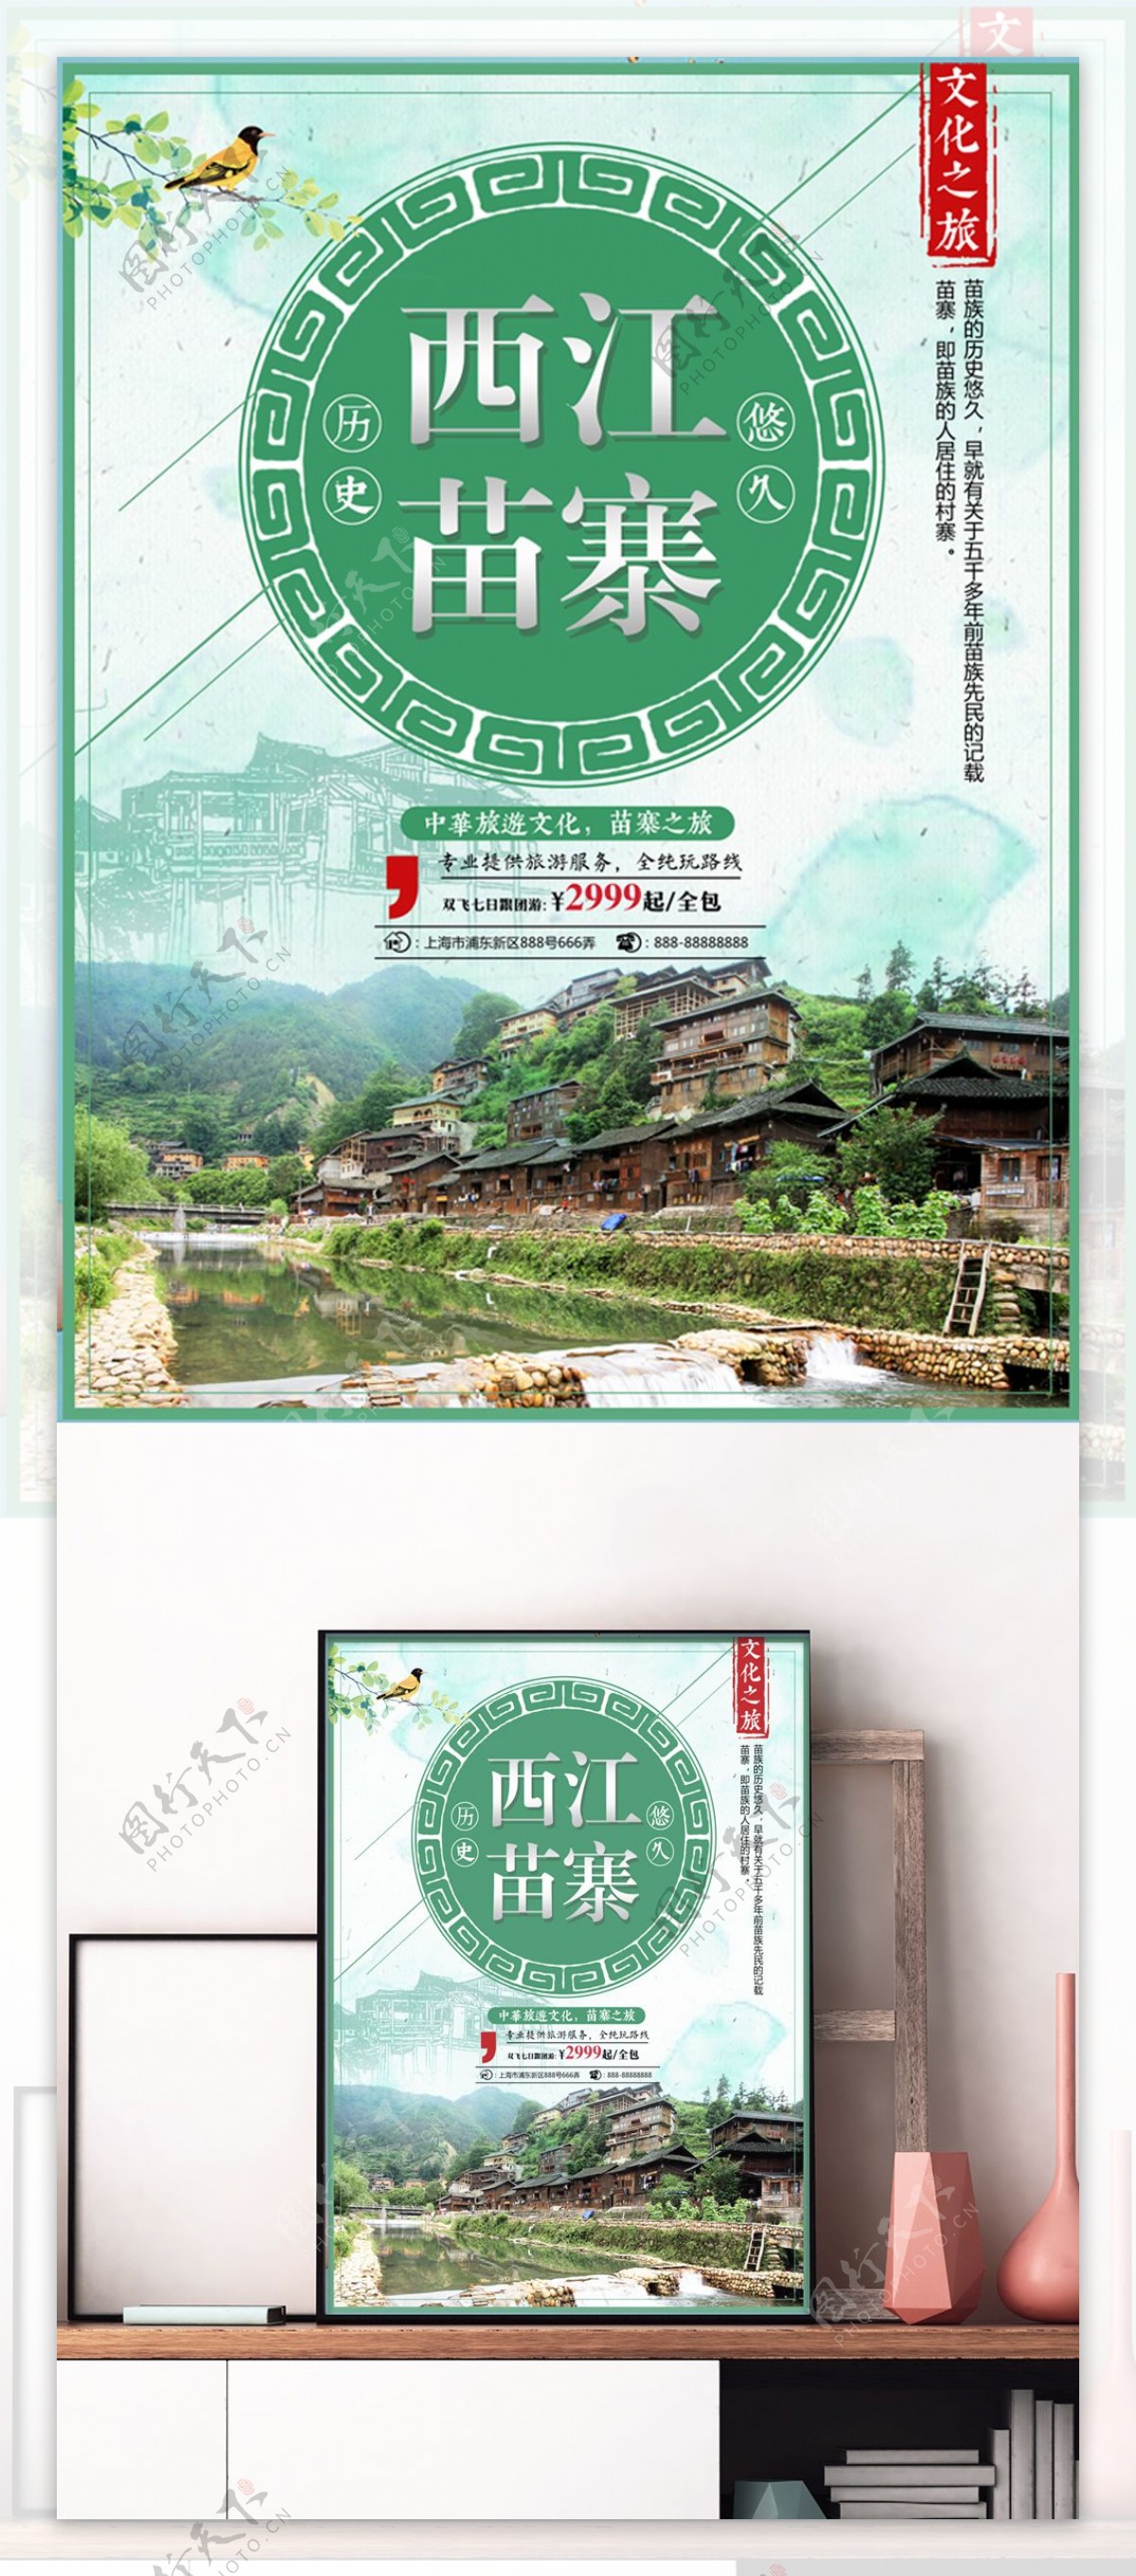 绿色民族风西江苗寨旅游美景旅行社旅游海报